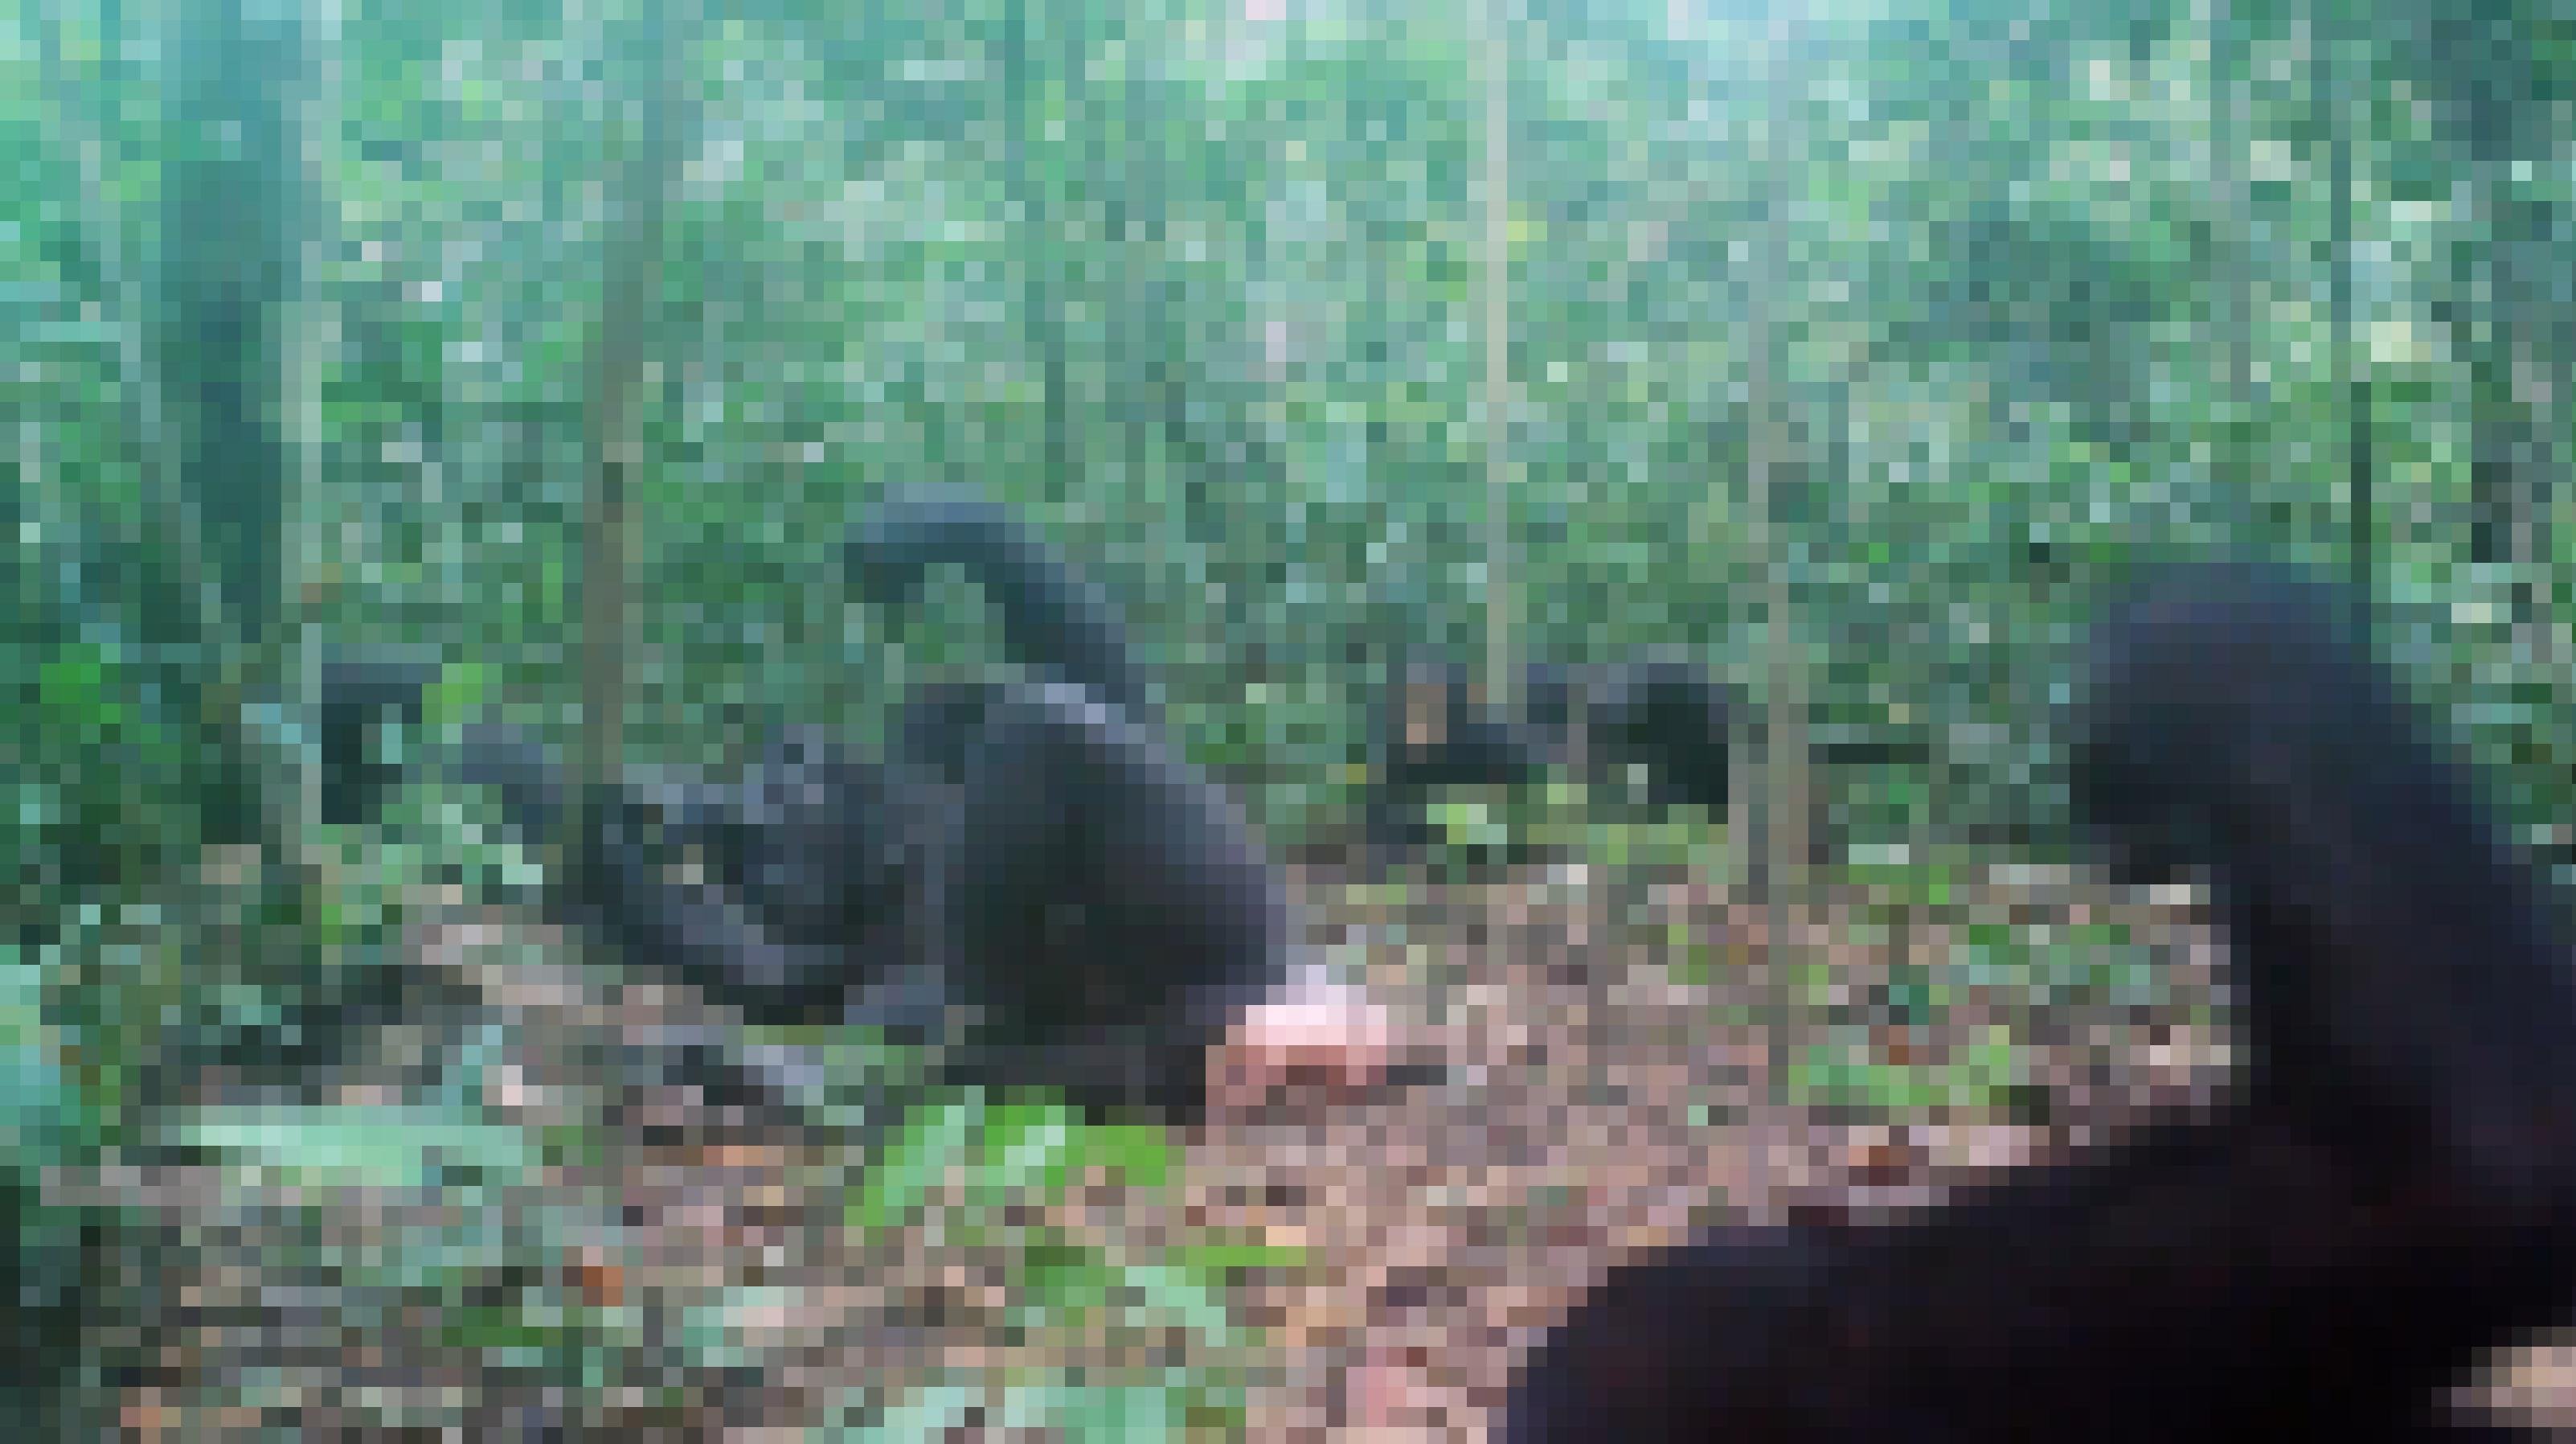 Ein Blick in den Urwald im Schutzgebiet Wonga Wongue in Gabun. Auf dem von abgefallenen Blättern bedeckten Boden liegt ein großes Schimpansen-Weibchen auf der Seite und fischt nach Termiten. Überwiegend dünne Baumstämmchen und grünes Blattwerk ragen dazwischen in die Höhe. Mehrere weitere Schimpansen sind am Rand und im Hintergrund zu sehen. Ein junger Schimpanse schaut aufmerksam auf das Weibchen, als wolle er sich die Art und Weise des Termiten-Angelns abschauen und einprägen. So werden Traditionen bei den Affen wahrscheinlich weitergegeben.